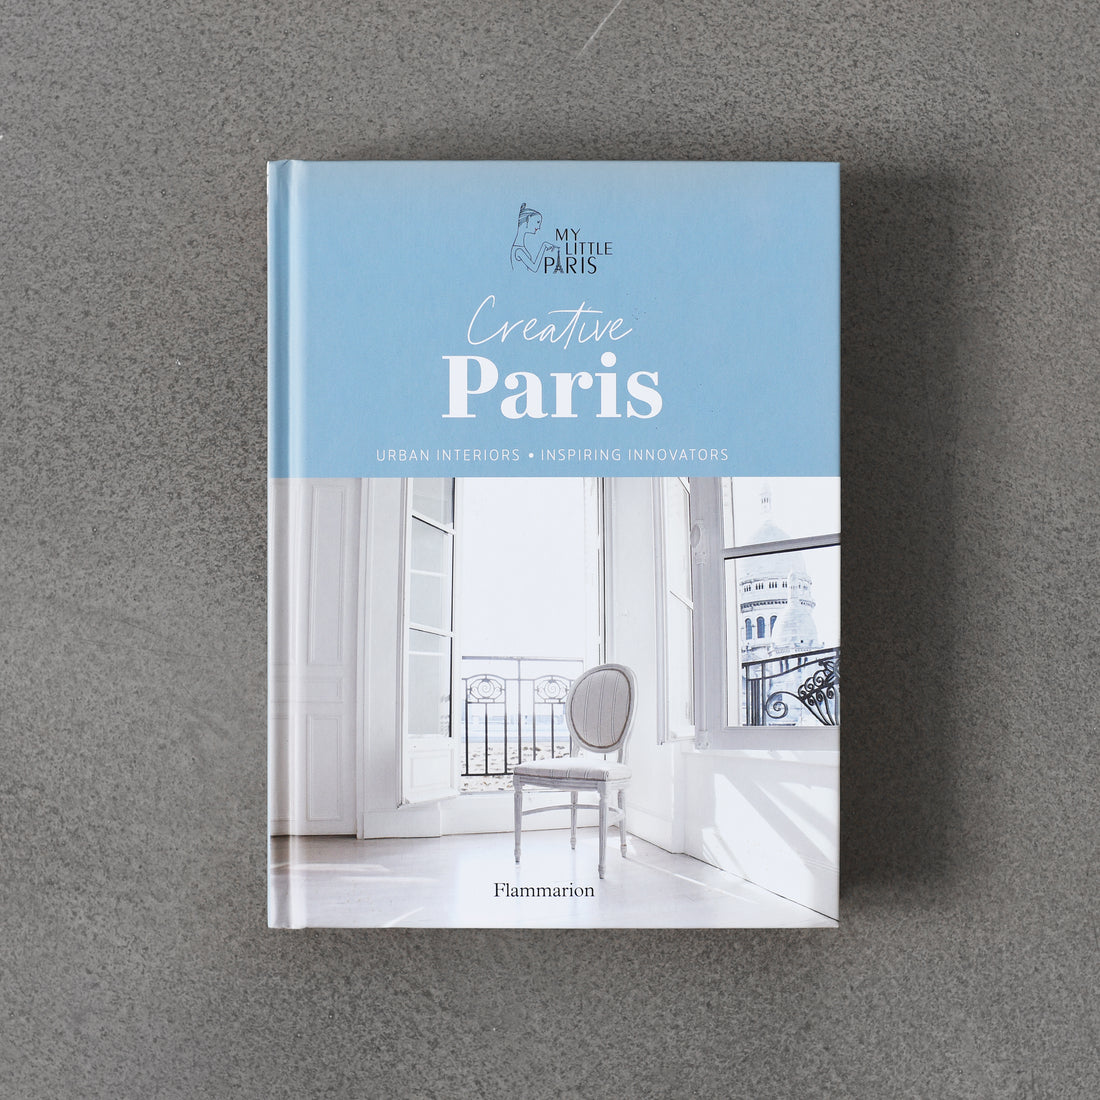 Kreatywny Paryż: Wnętrza miejskie, inspirujący innowatorzy